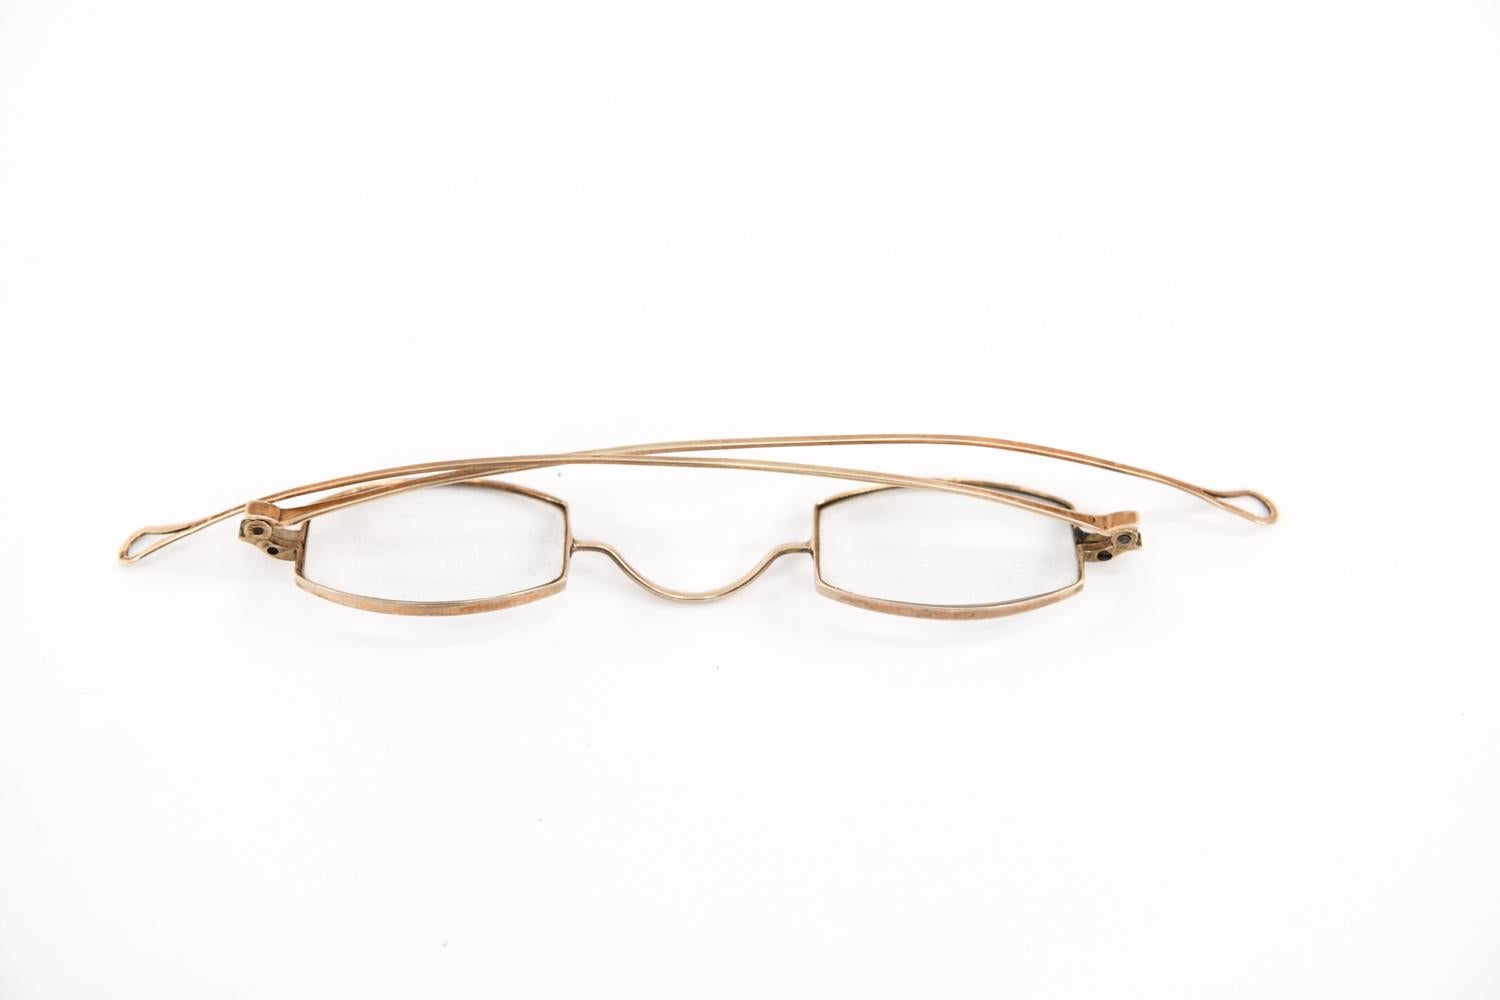 14k solid gold eyeglasses frames